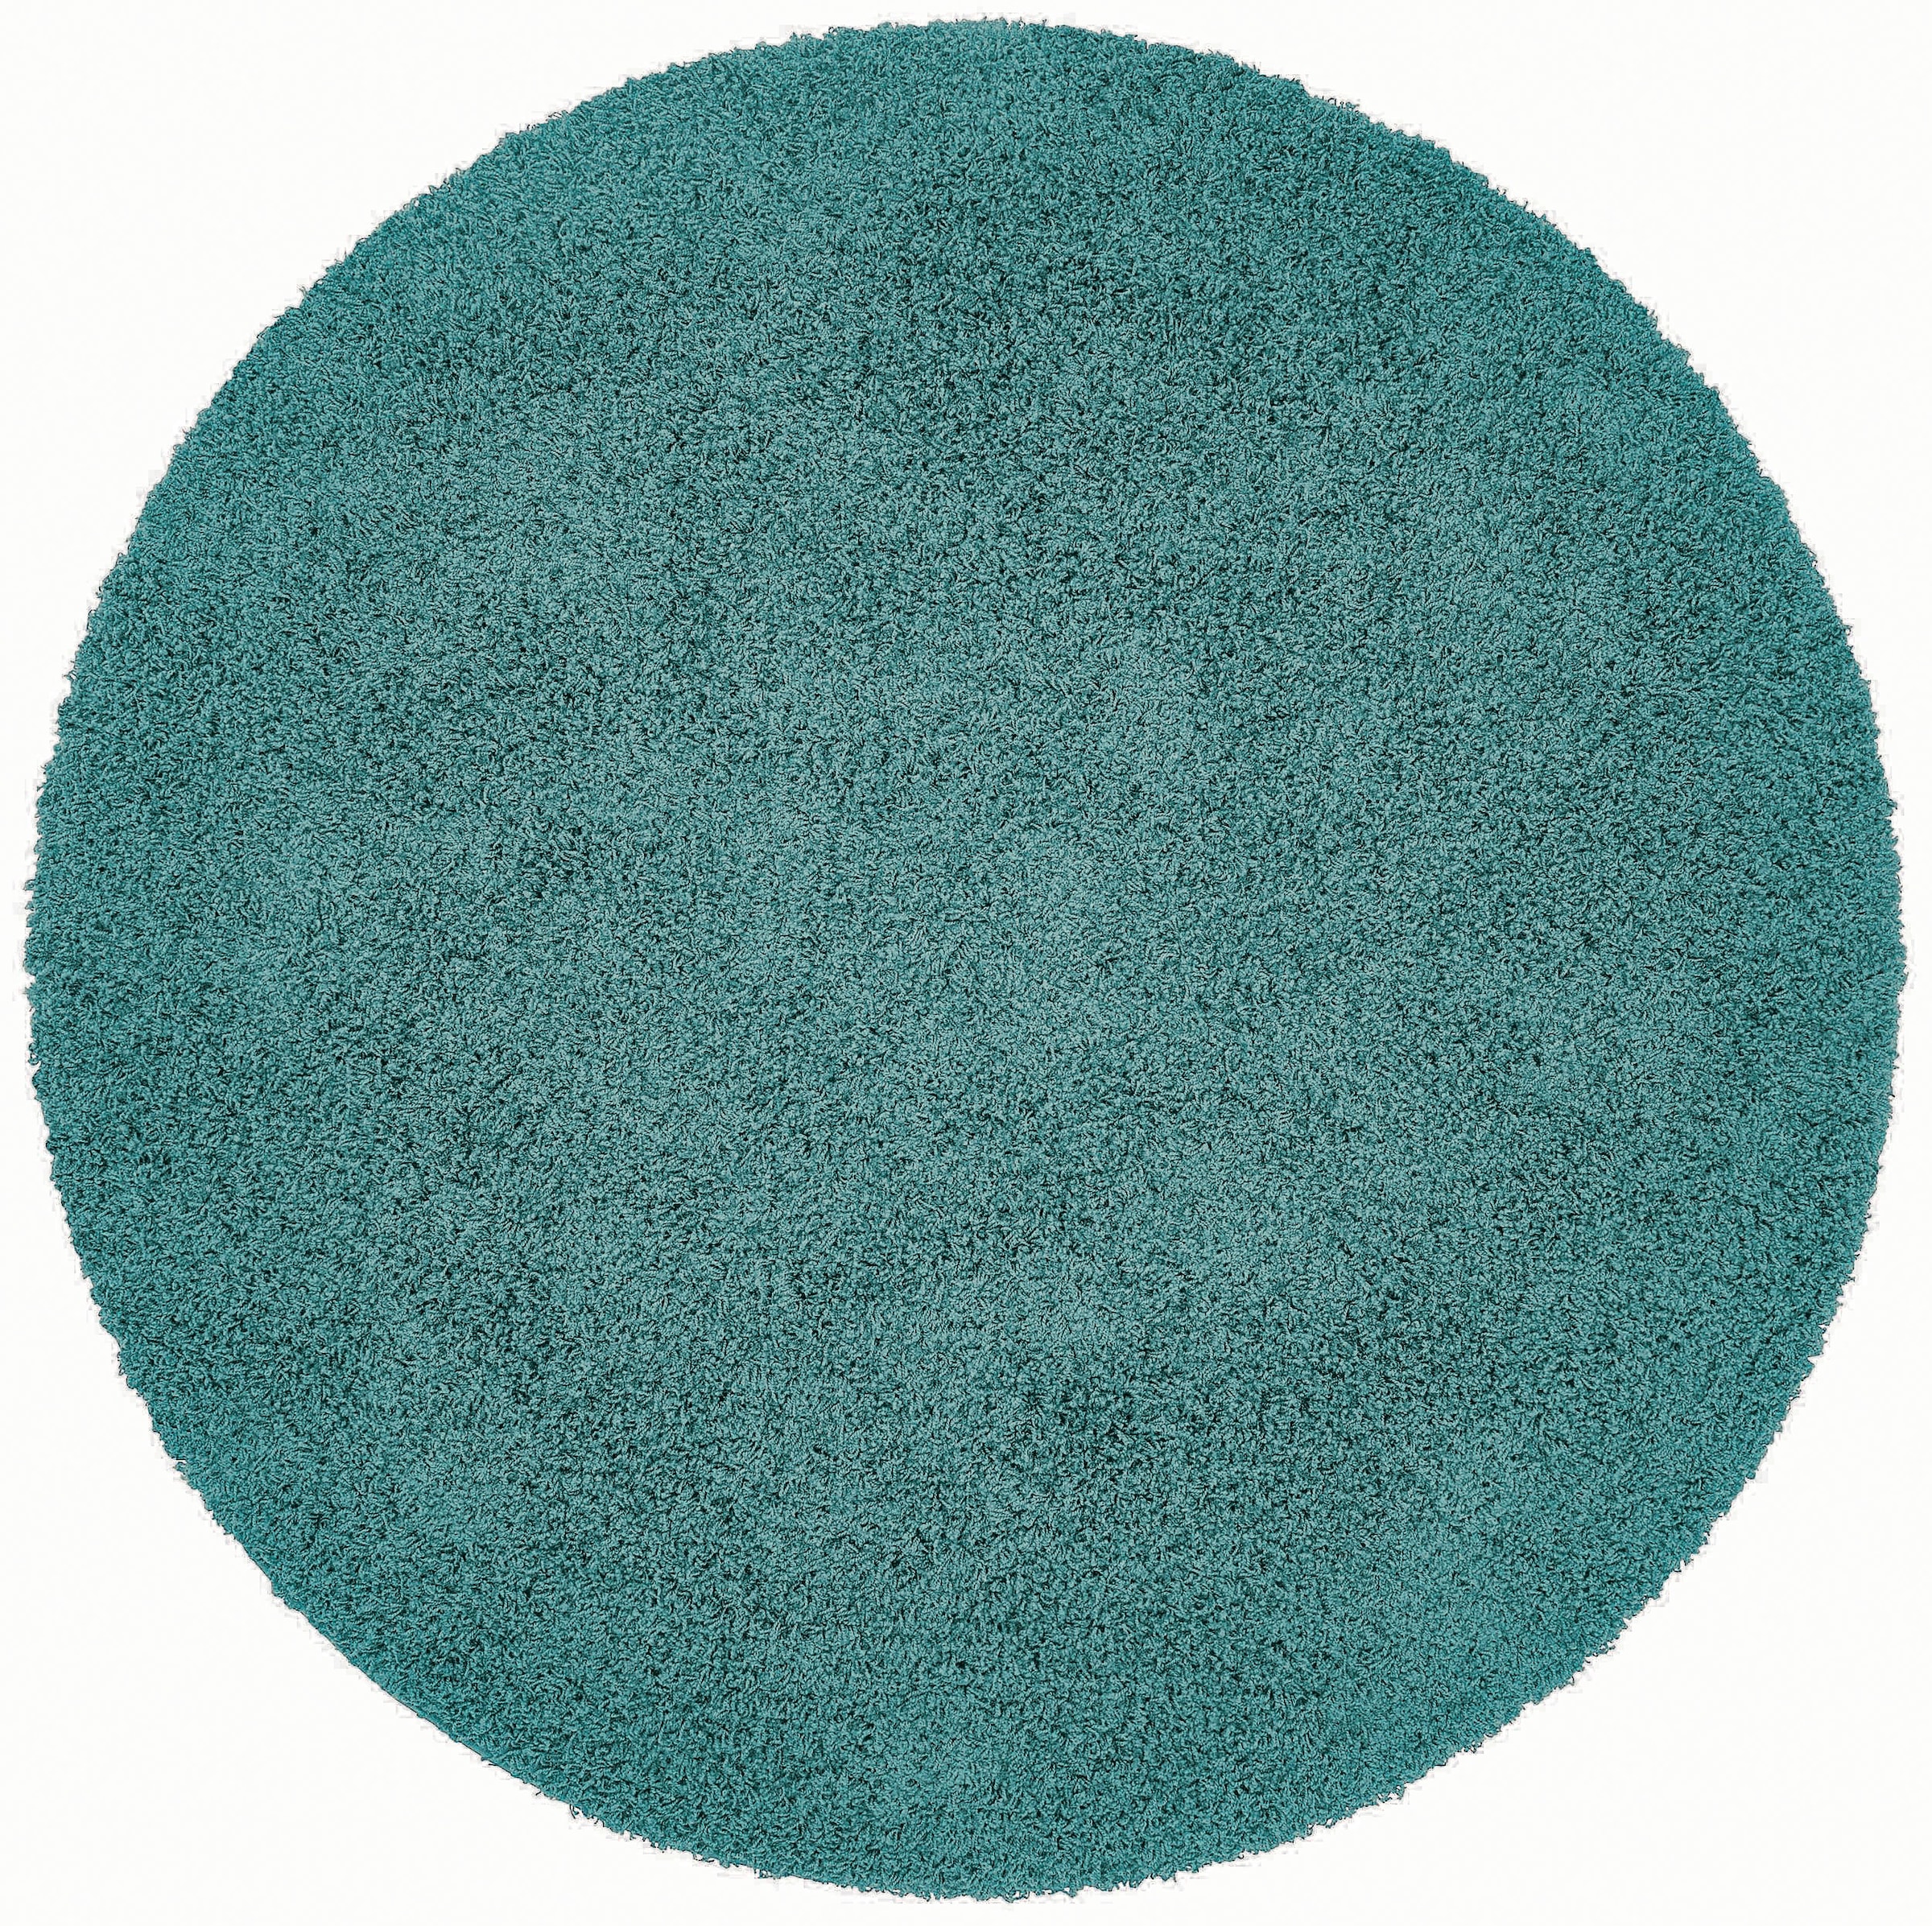 Home affaire Teppich »Viva Teppich rund«, rund, Uni-Farben, einfarbig, besonders weich und kuschelig